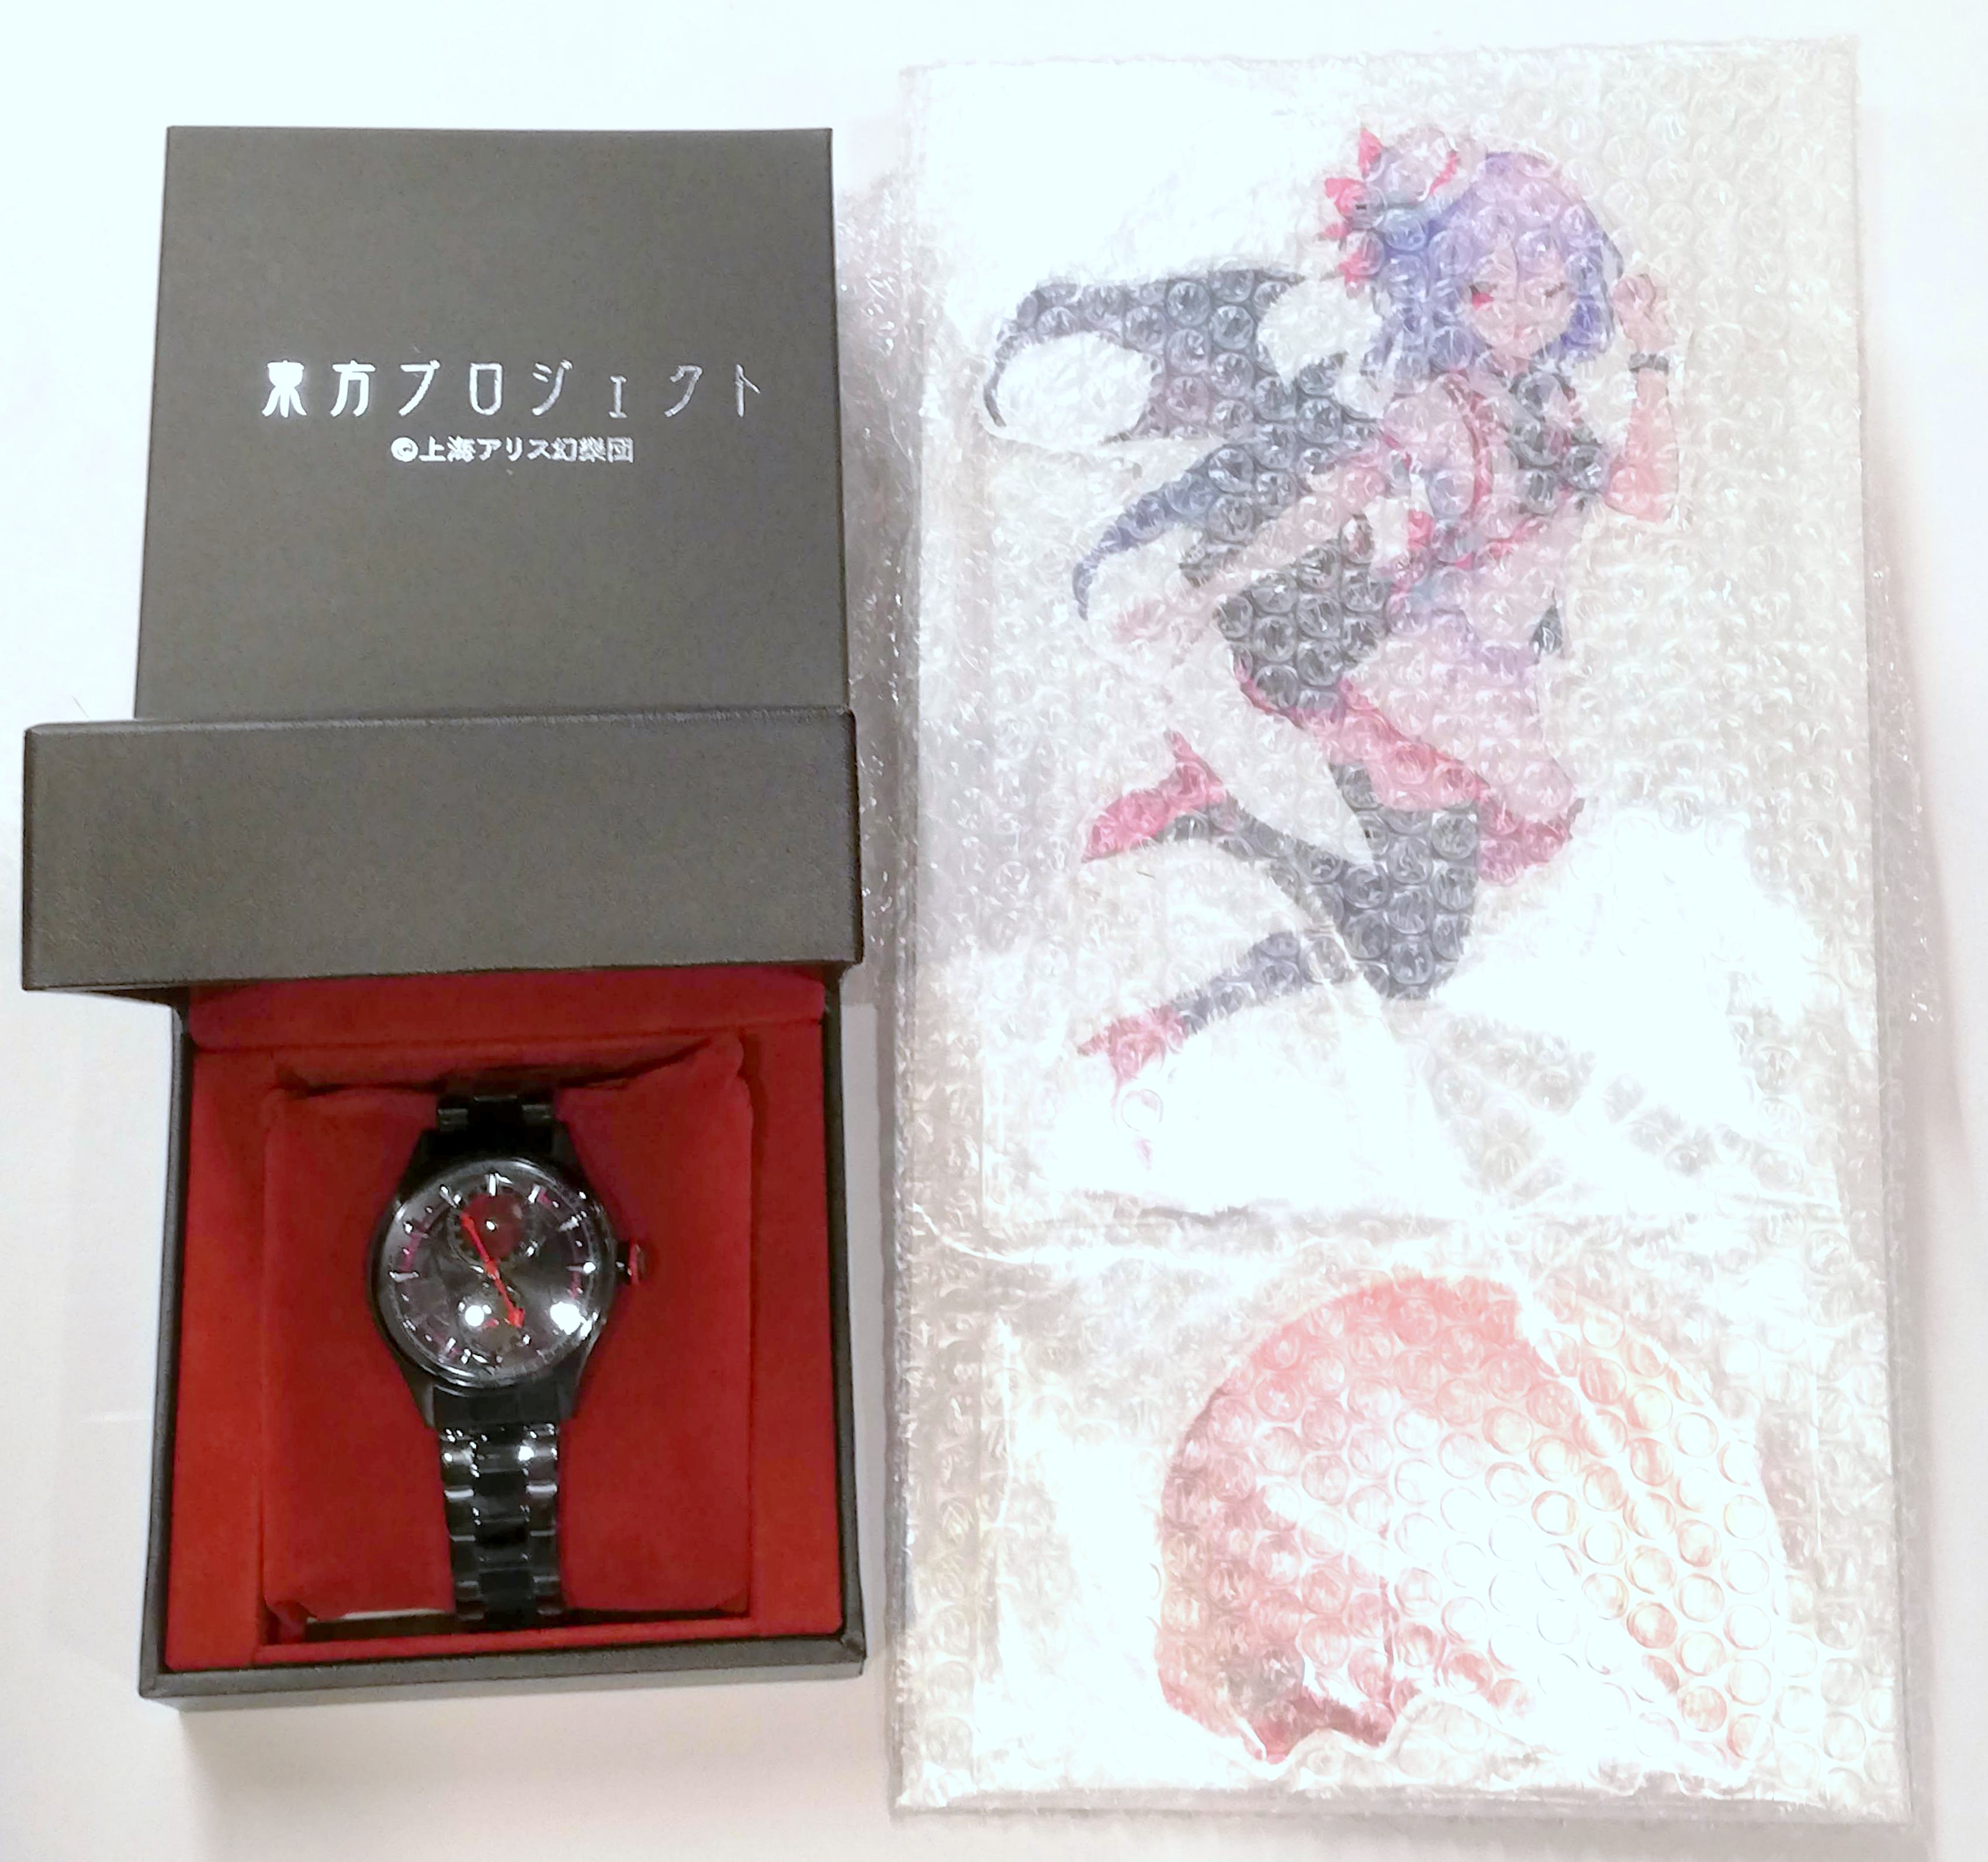 Super Groupies 東方プロジェクト レミリア・スカーレット モデル 腕時計 アクリルスタンド付き メンズF | ありある